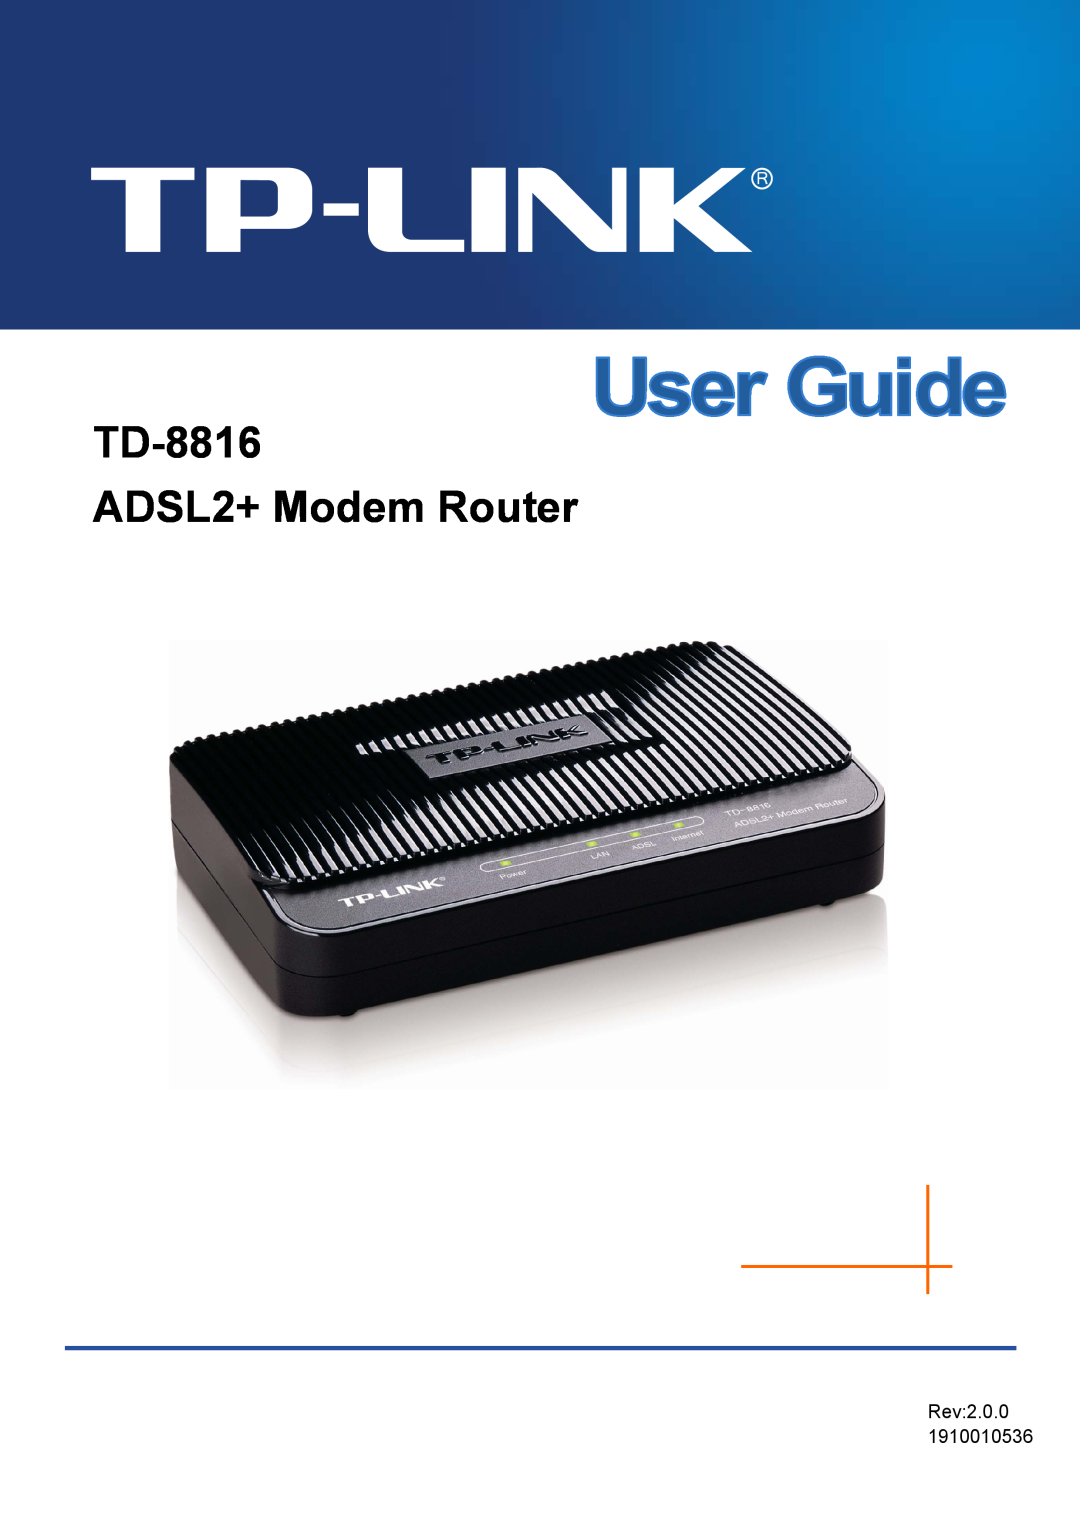 TP-Link manual TD-8816 ADSL2+ Modem Router, Rev3.1.0 1910010870 